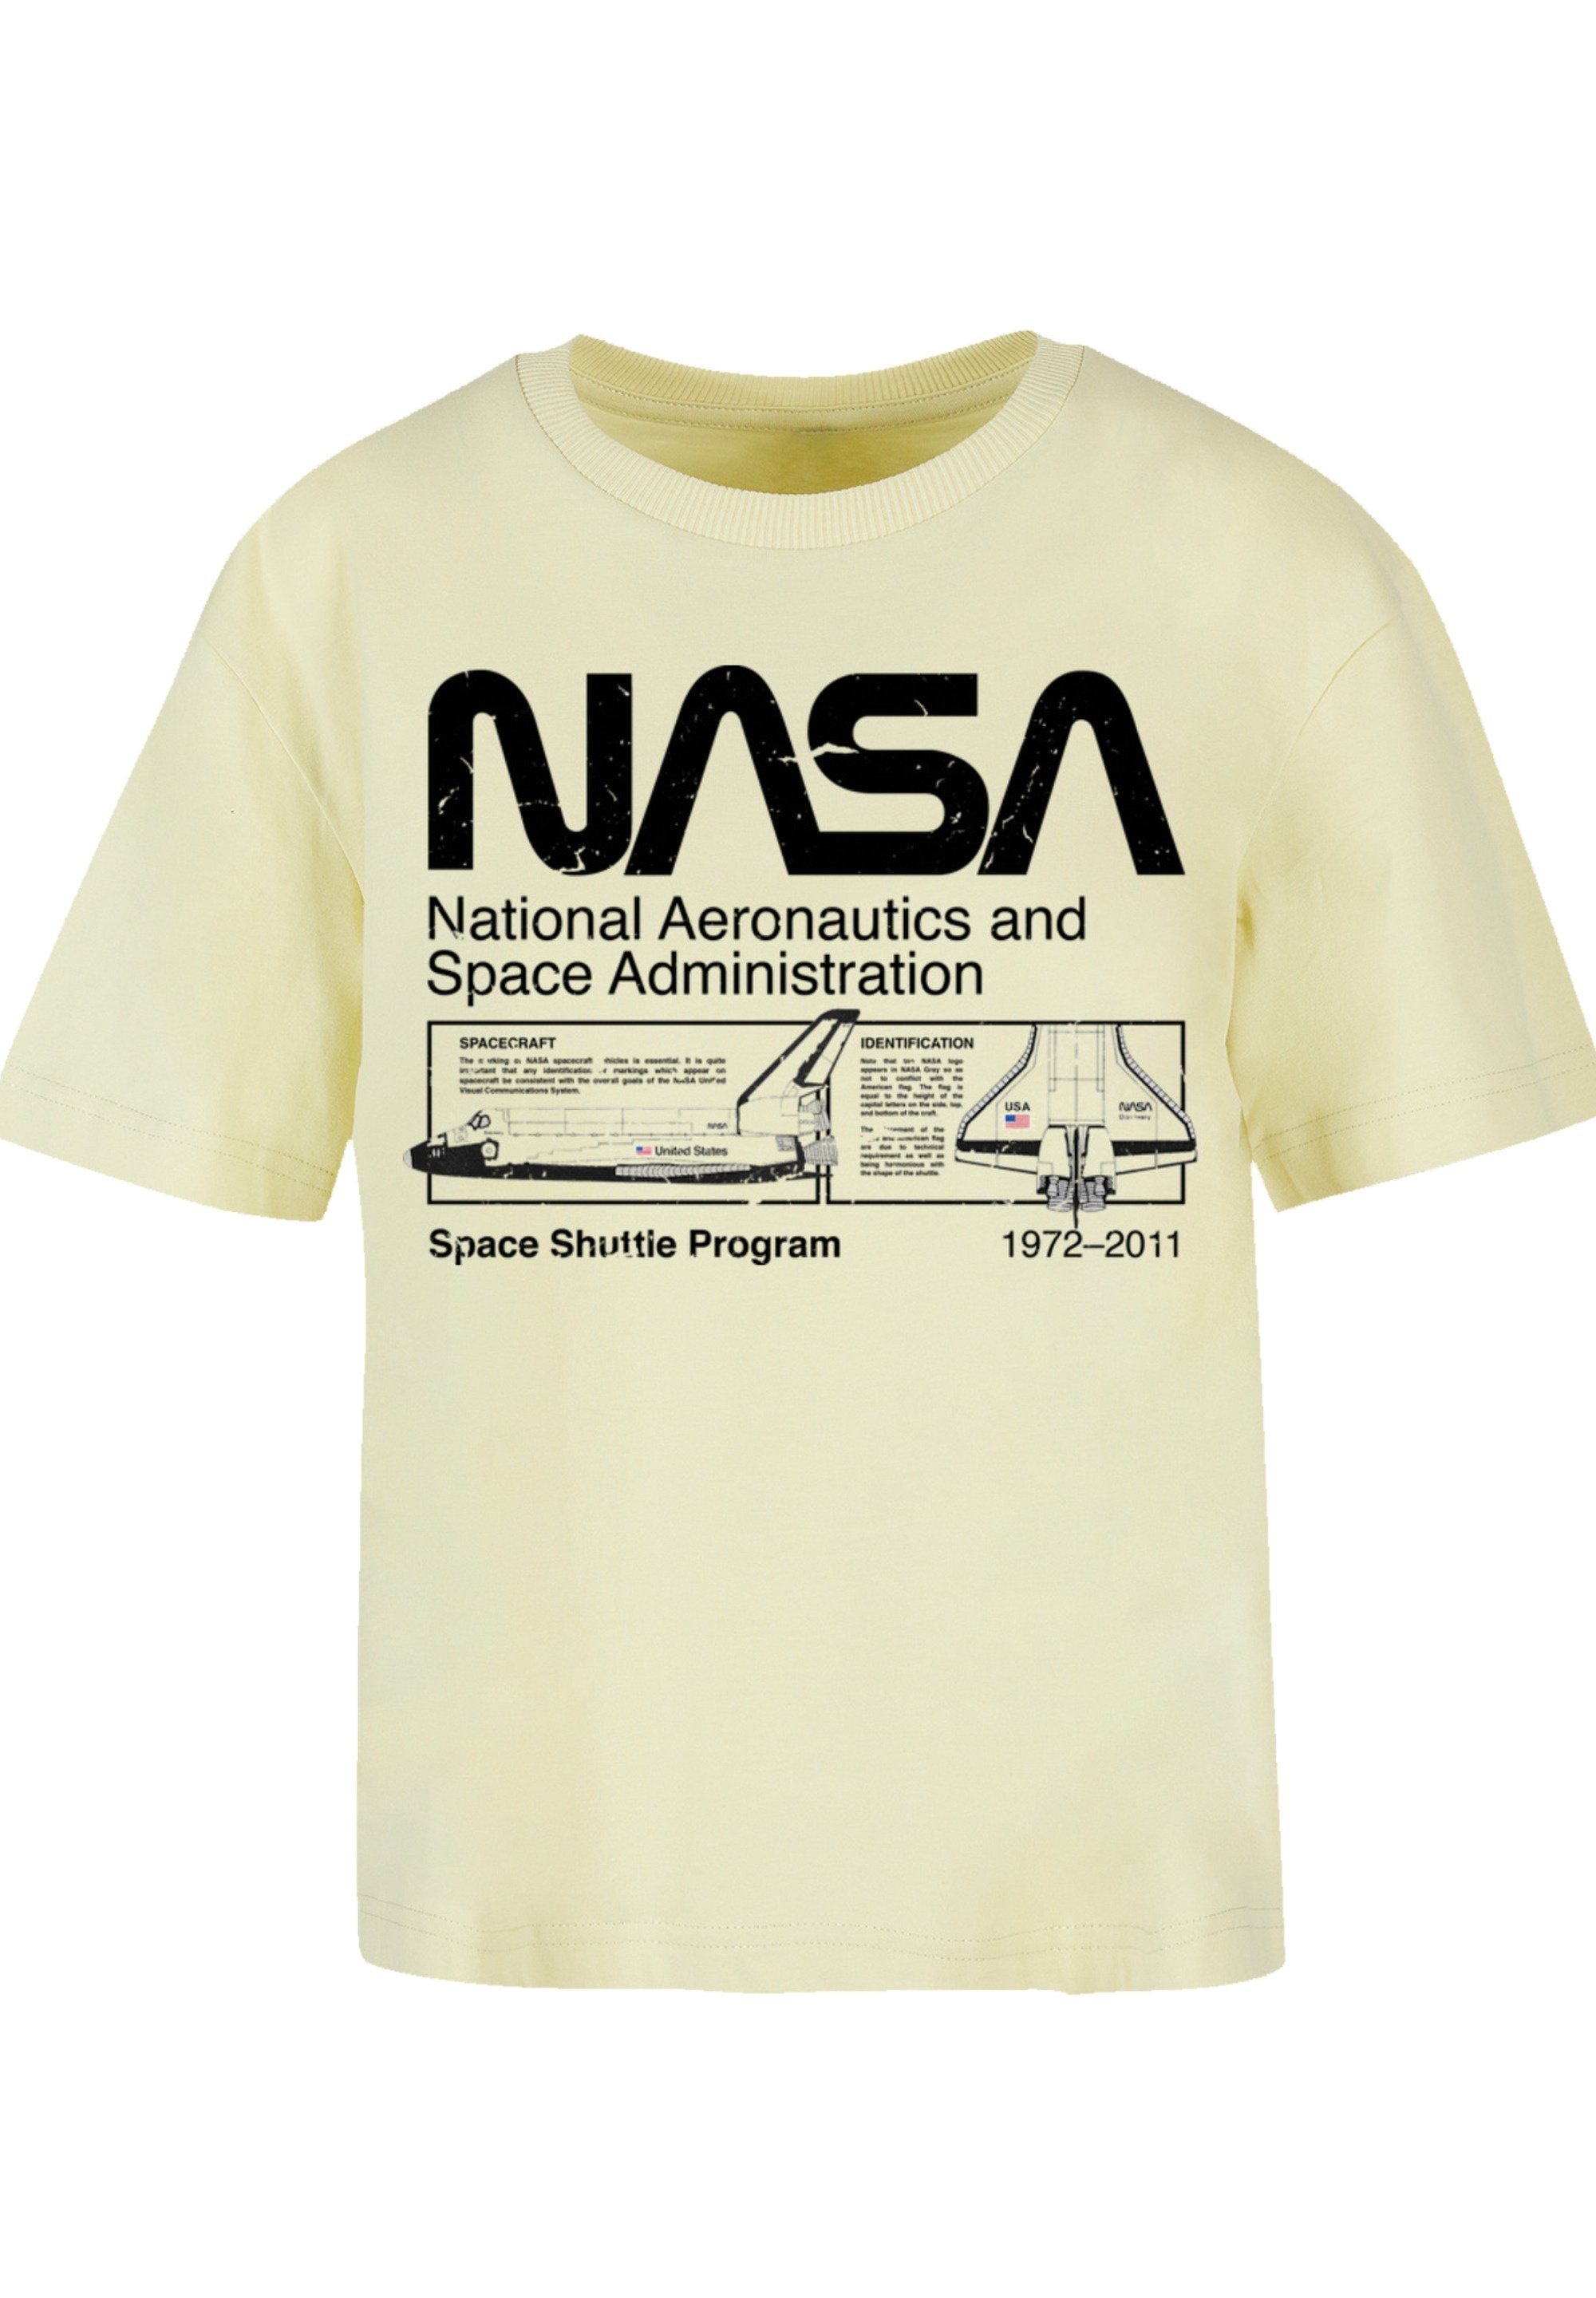 stylischen T-Shirt F4NT4STIC Print, Shuttle Look Gerippter Classic Space für Rundhalsausschnitt